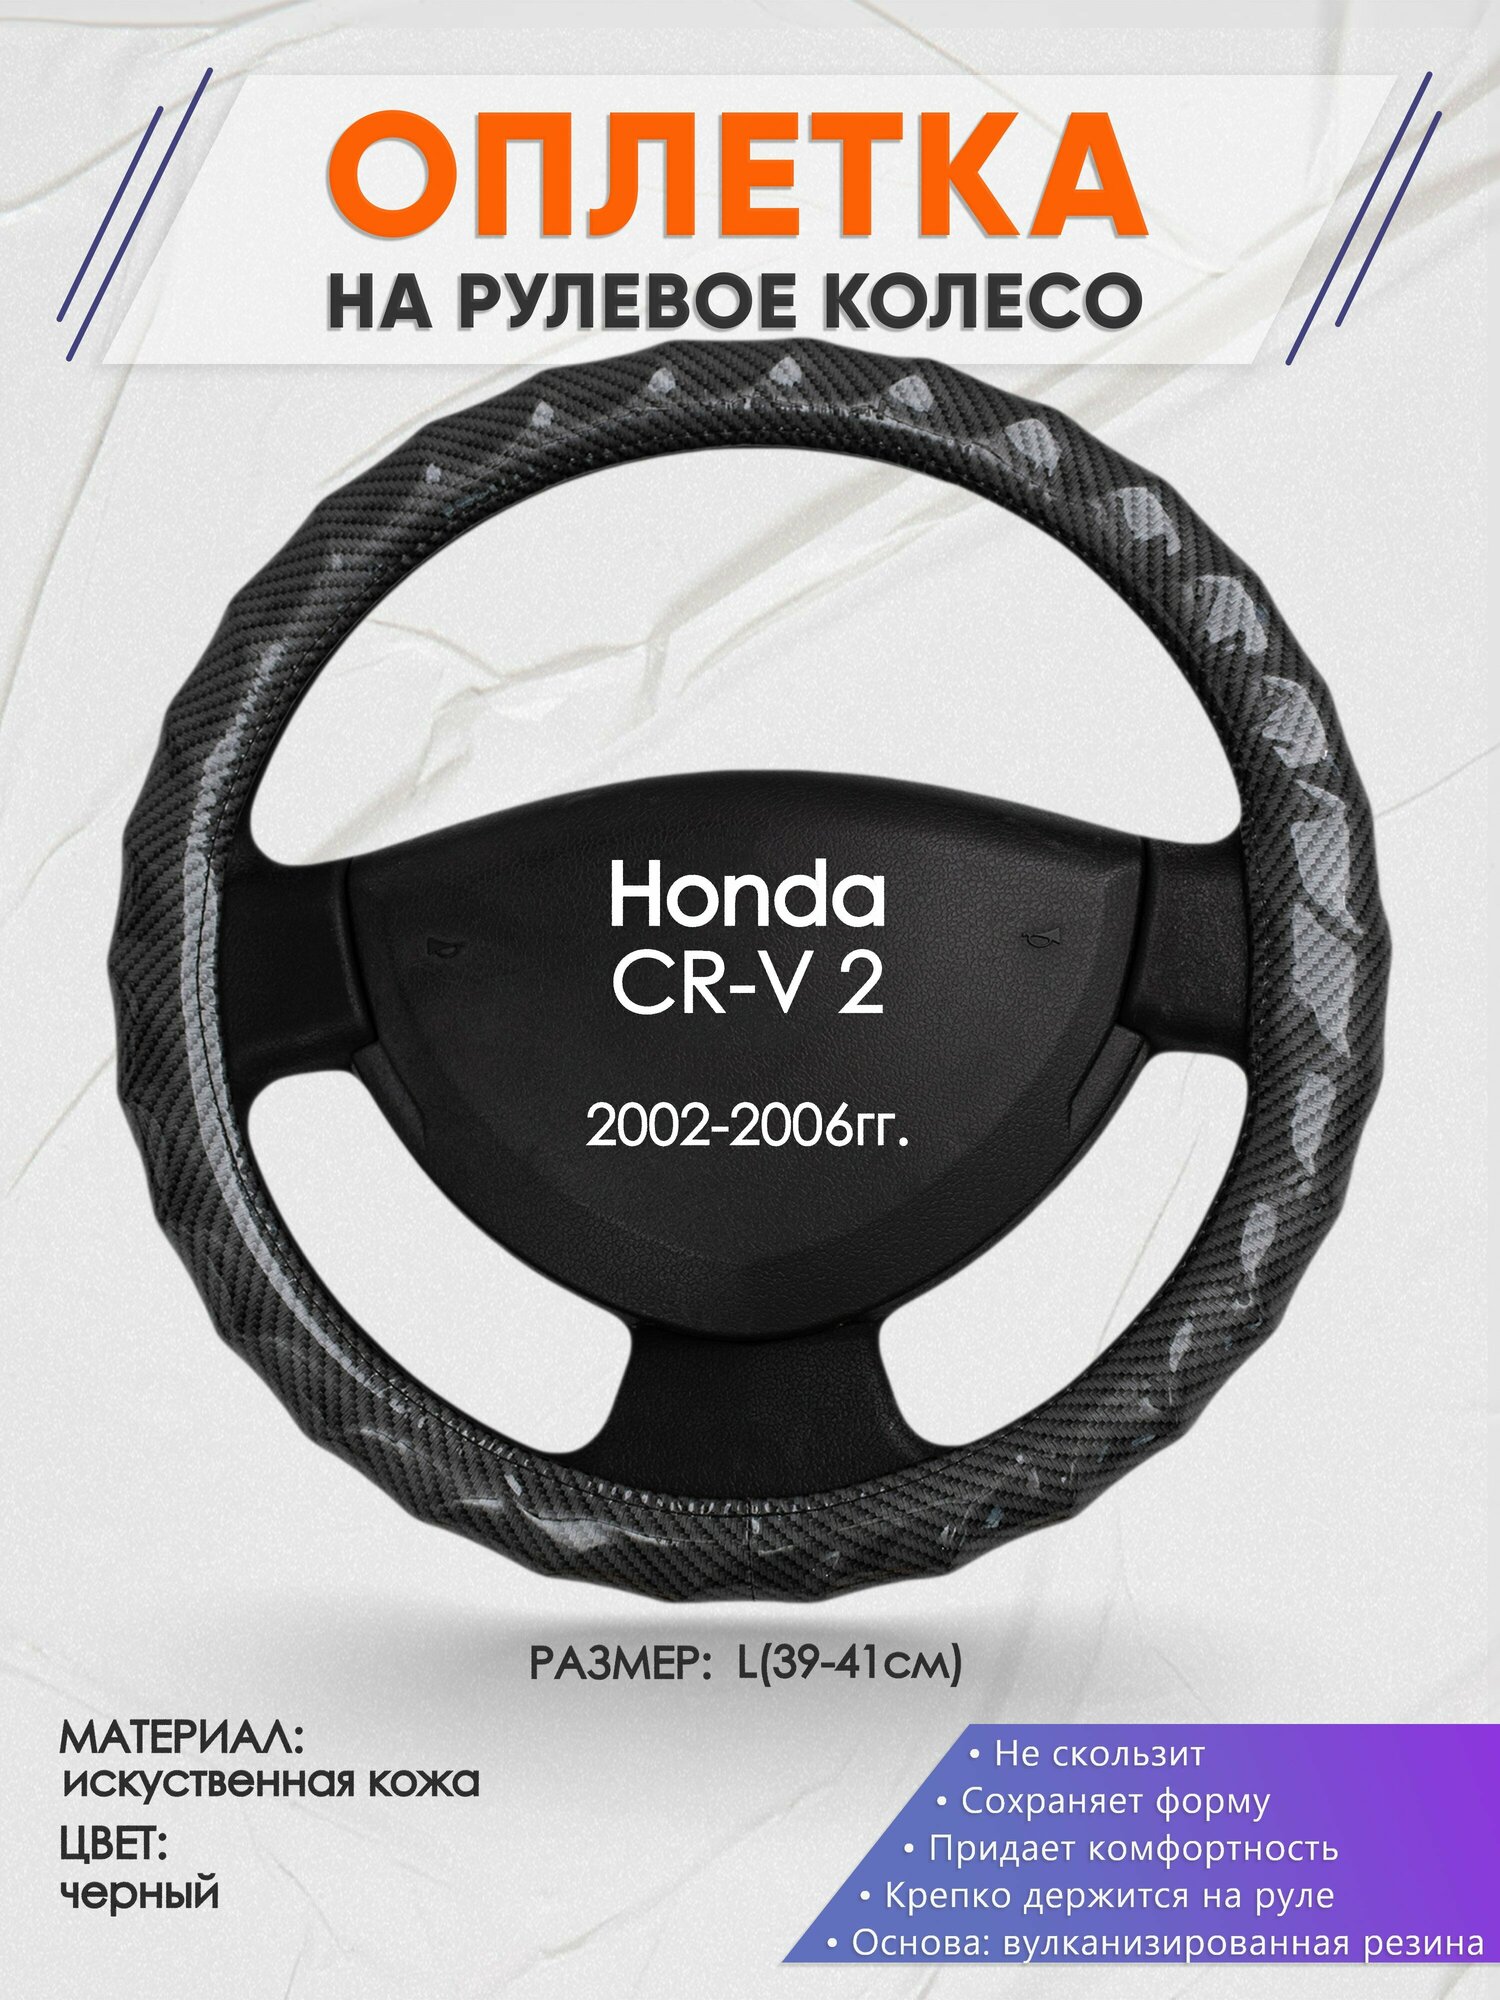 Оплетка на руль для Honda CR-V 2(Хонда срв 2) 2002-2006, L(39-41см), Искусственная кожа 15